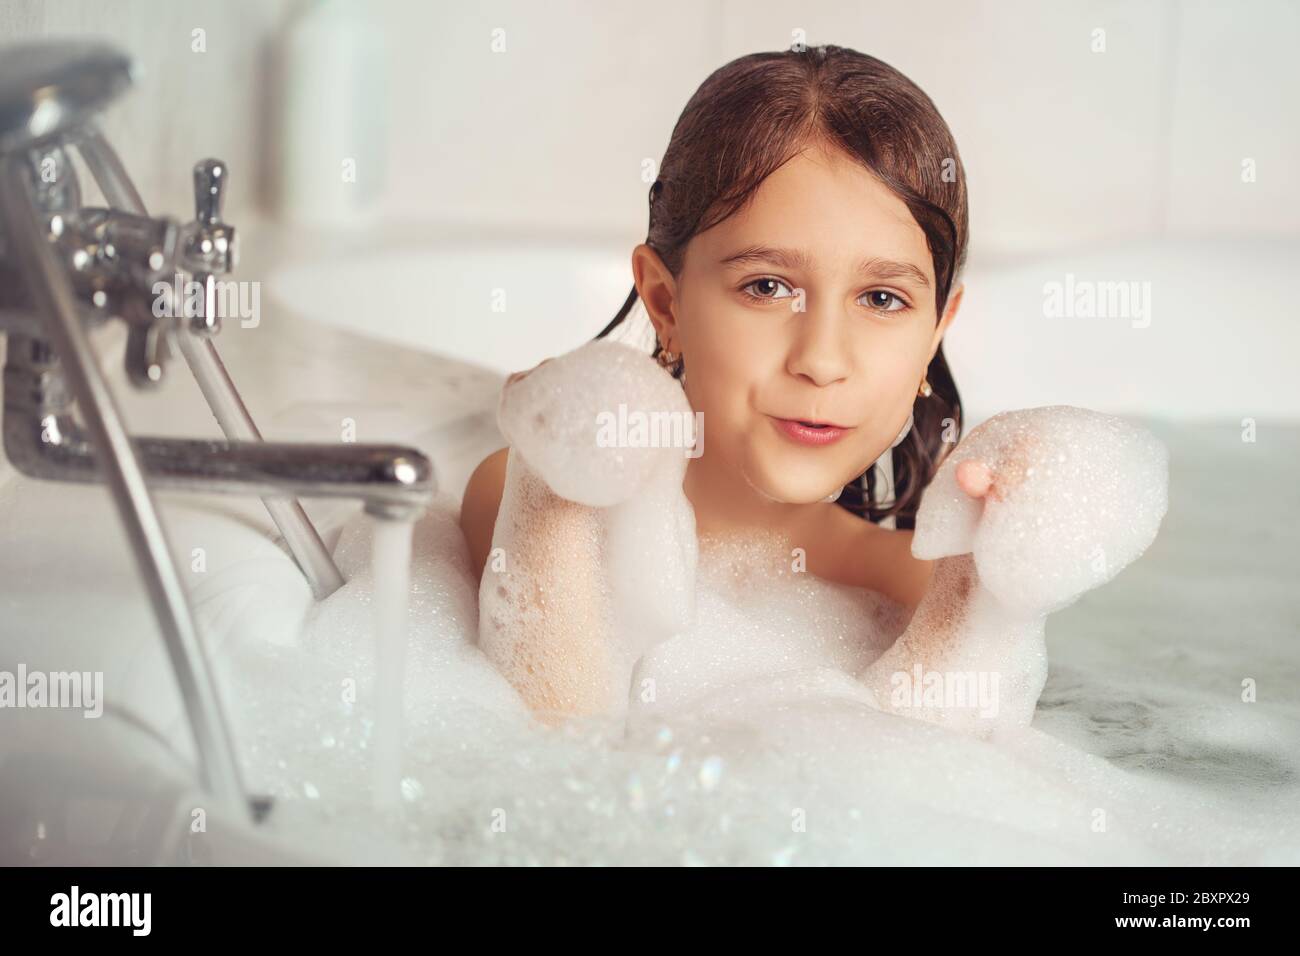 Видео купается ванна девочки. Девочка моется в ванной. Девочки в ванне. Девочка купается в ванне. Девочка 10 лет в ванной.